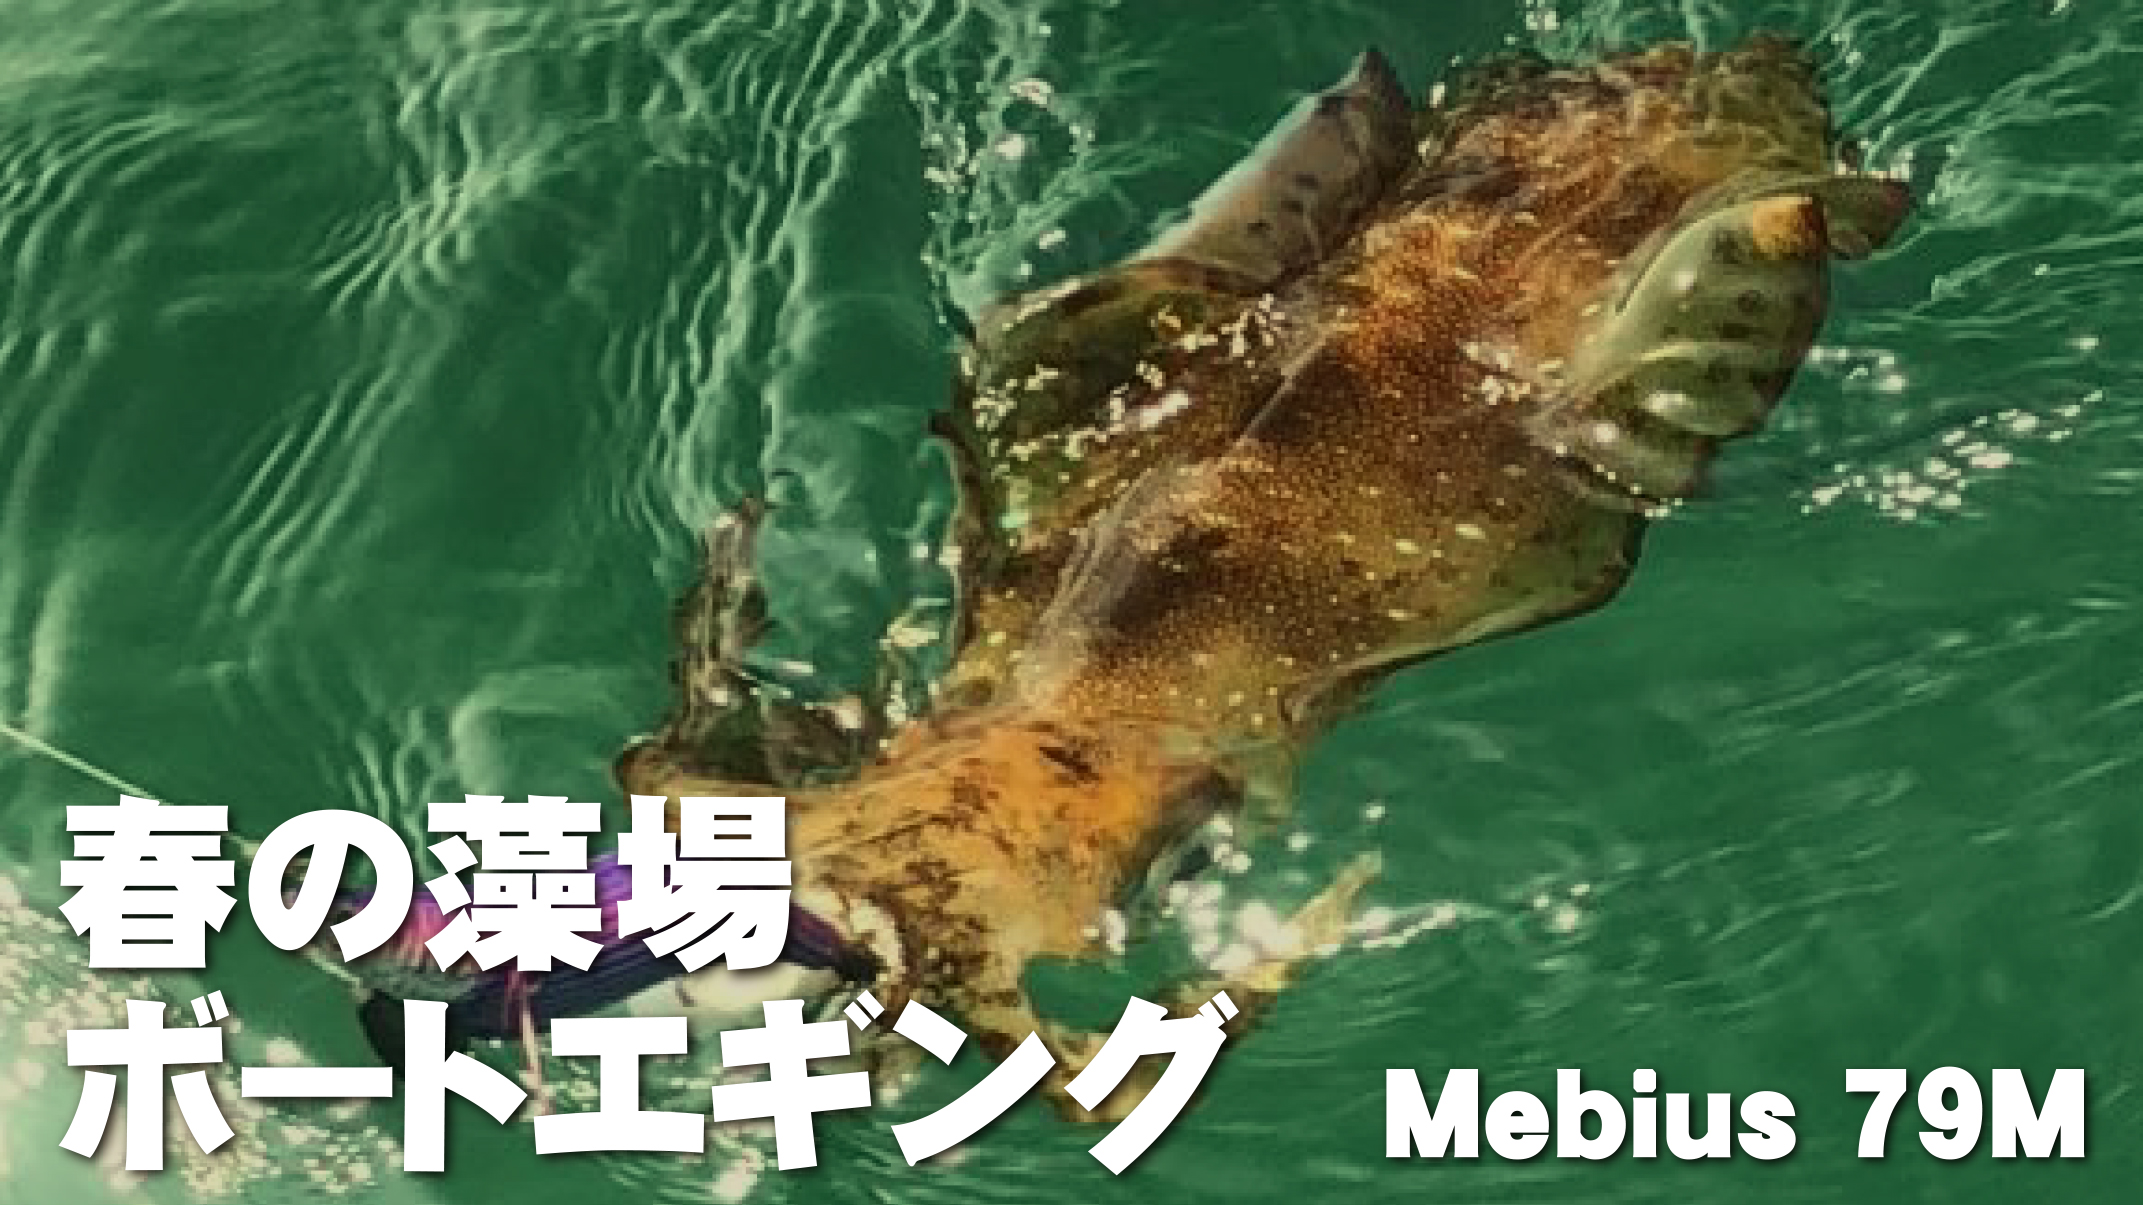 【YBスタッフレポート】Mebius79Mを使用した、春の藻場ボートエギング